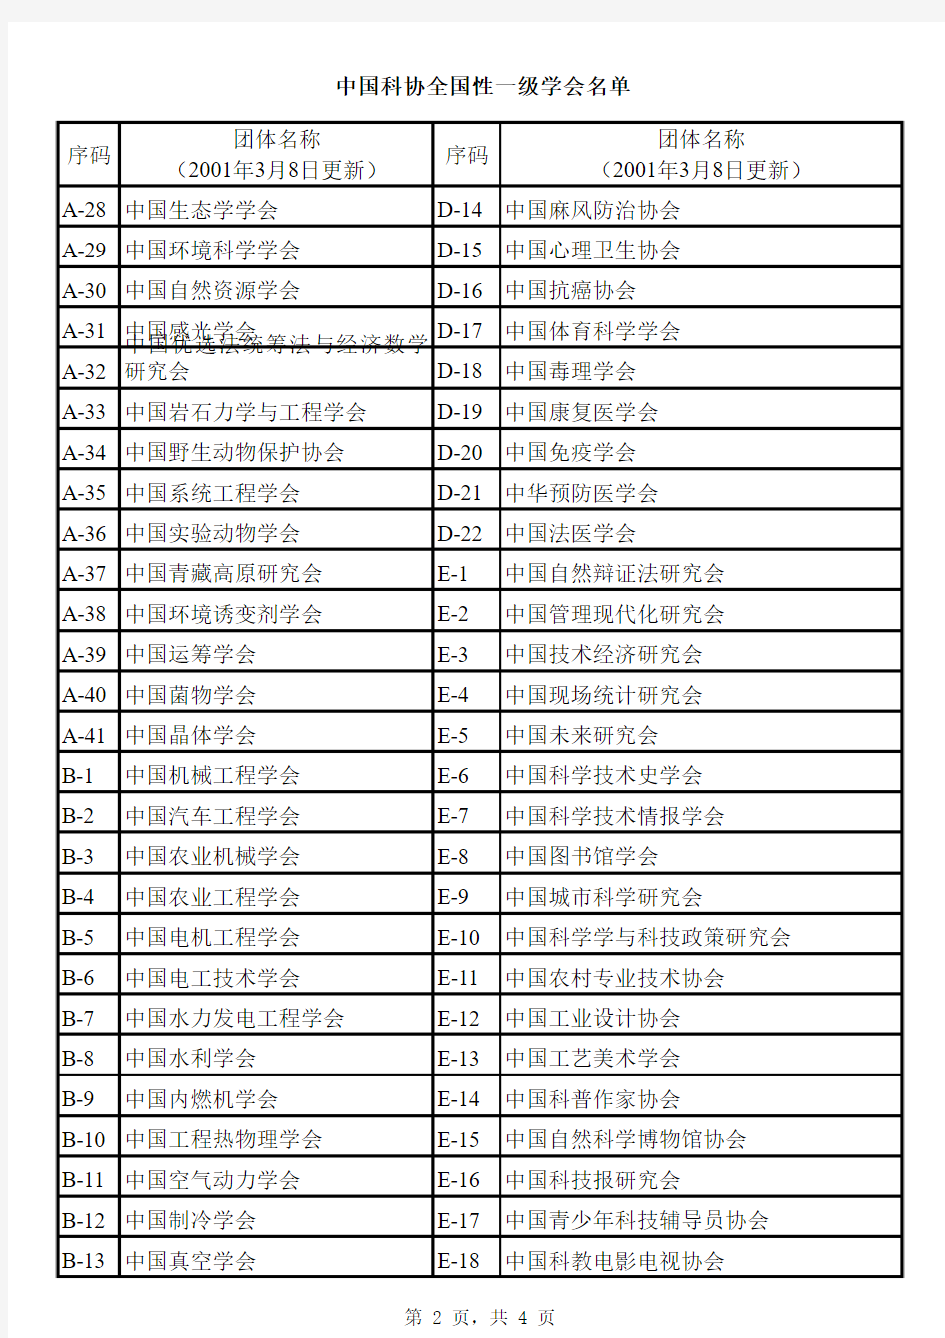 中国科协全国性一级学会名单